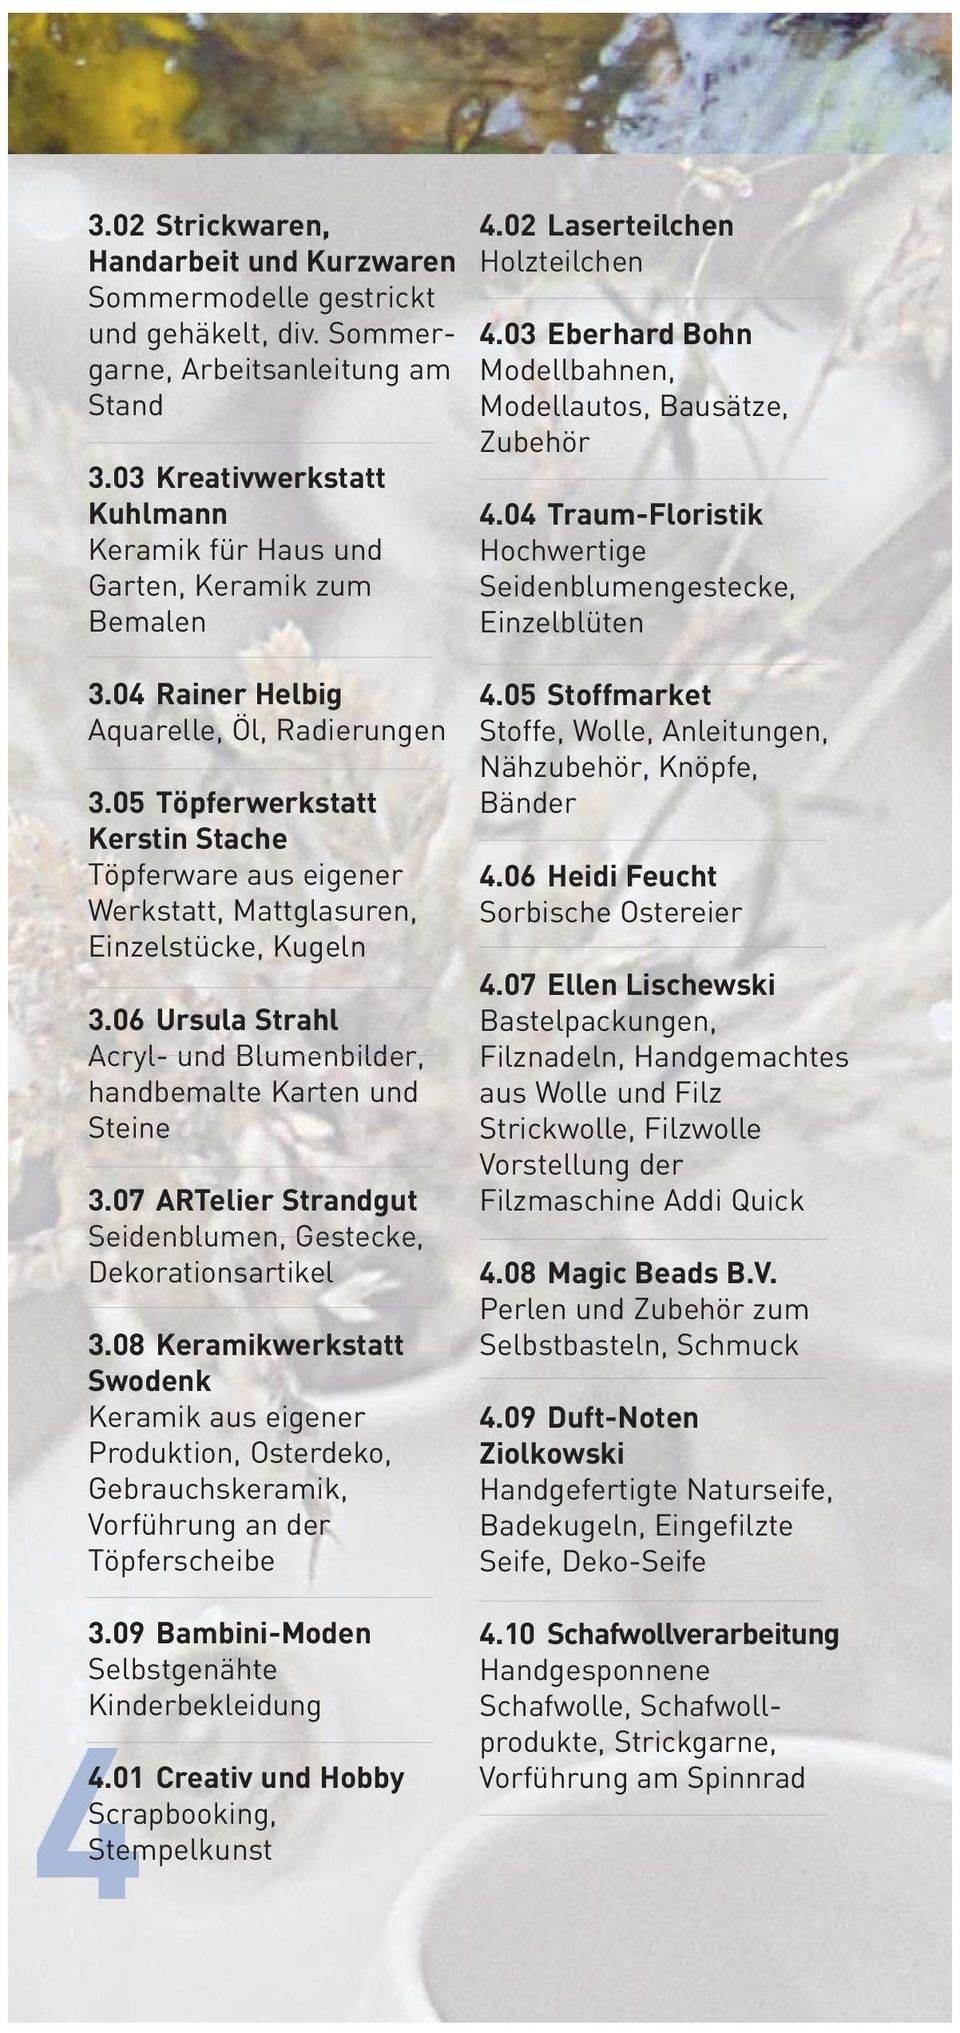 04 Traum-Floristik Hochwertige Seidenblumengestecke, Einzelblüten 3.04 Rainer Helbig Aquarelle, Öl, Radierungen 3.